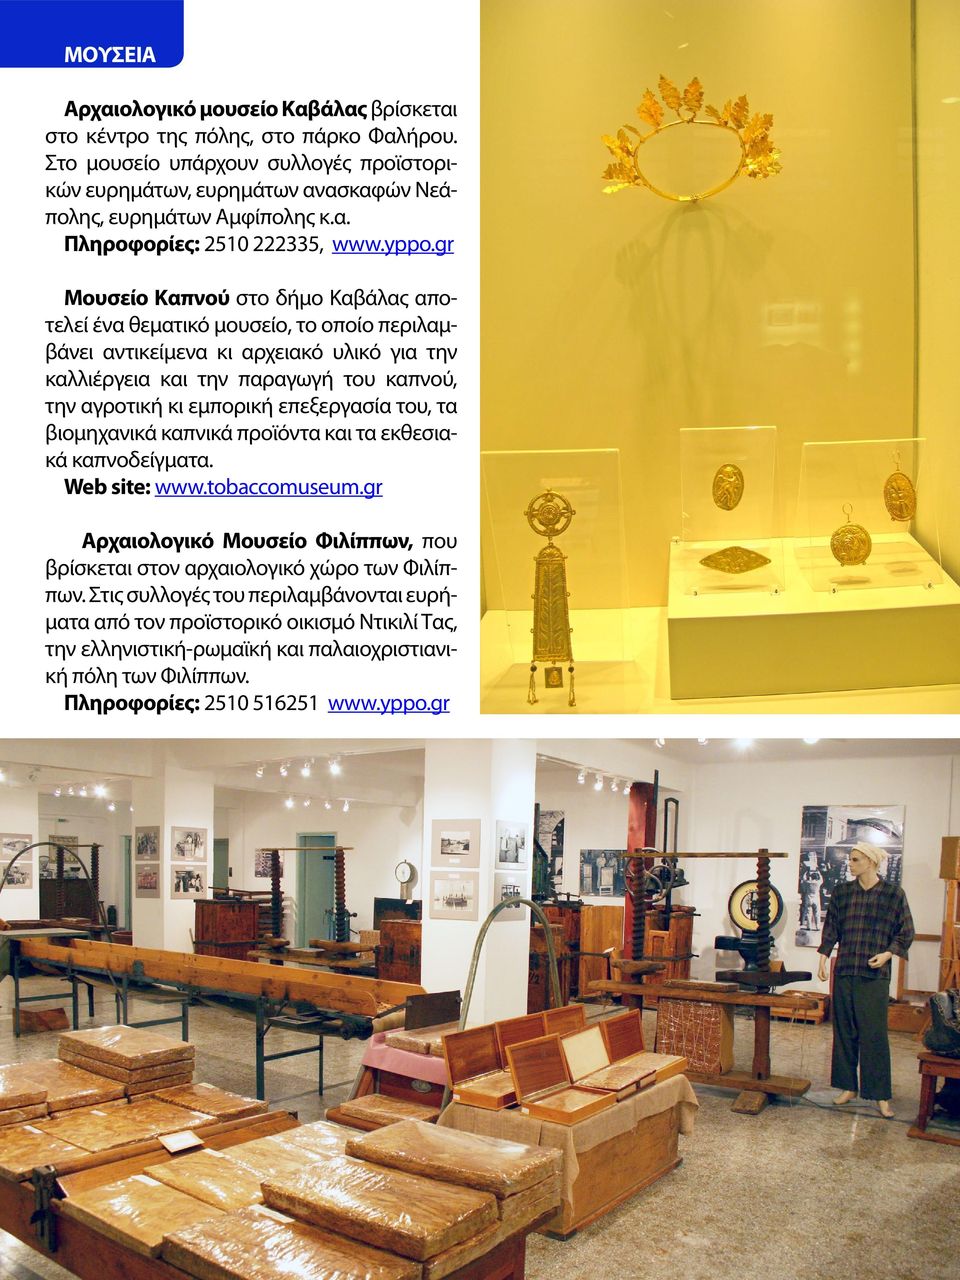 επεξεργασία του, τα βιομηχανικά καπνικά προϊόντα και τα εκθεσιακά καπνοδείγματα. Web site: www.tobaccomuseum.gr Αρχαιολογικό Μουσείο Φιλίππων, που βρίσκεται στον αρχαιολογικό χώρο των Φιλίππων.